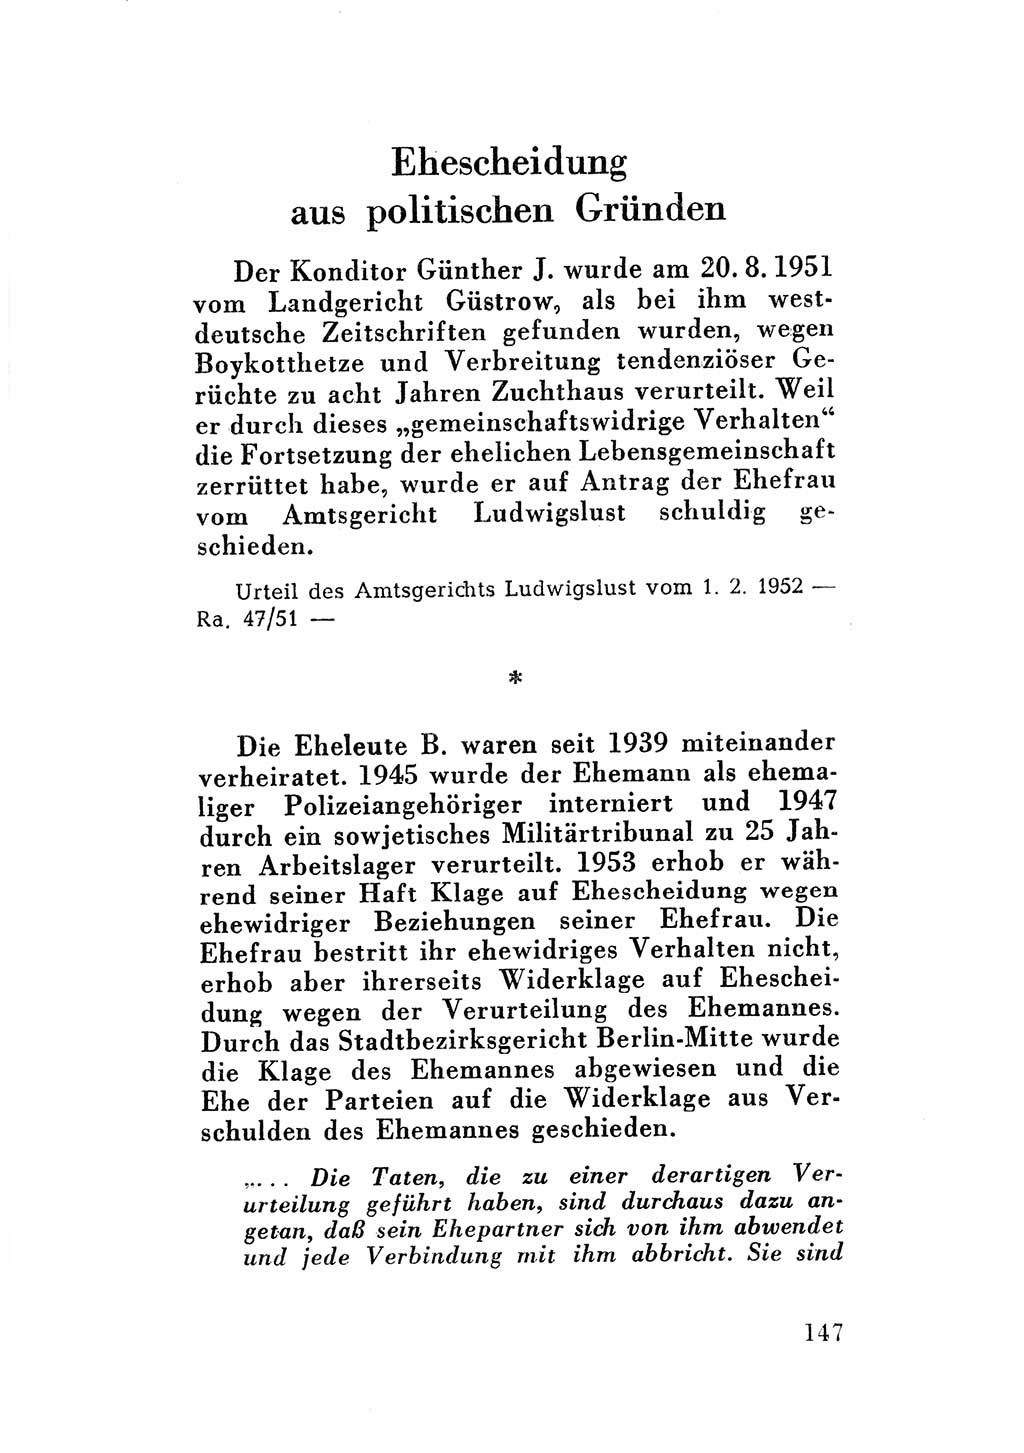 Katalog des Unrechts, Untersuchungsausschuß Freiheitlicher Juristen (UfJ) [Bundesrepublik Deutschland (BRD)] 1956, Seite 147 (Kat. UnR. UfJ BRD 1956, S. 147)